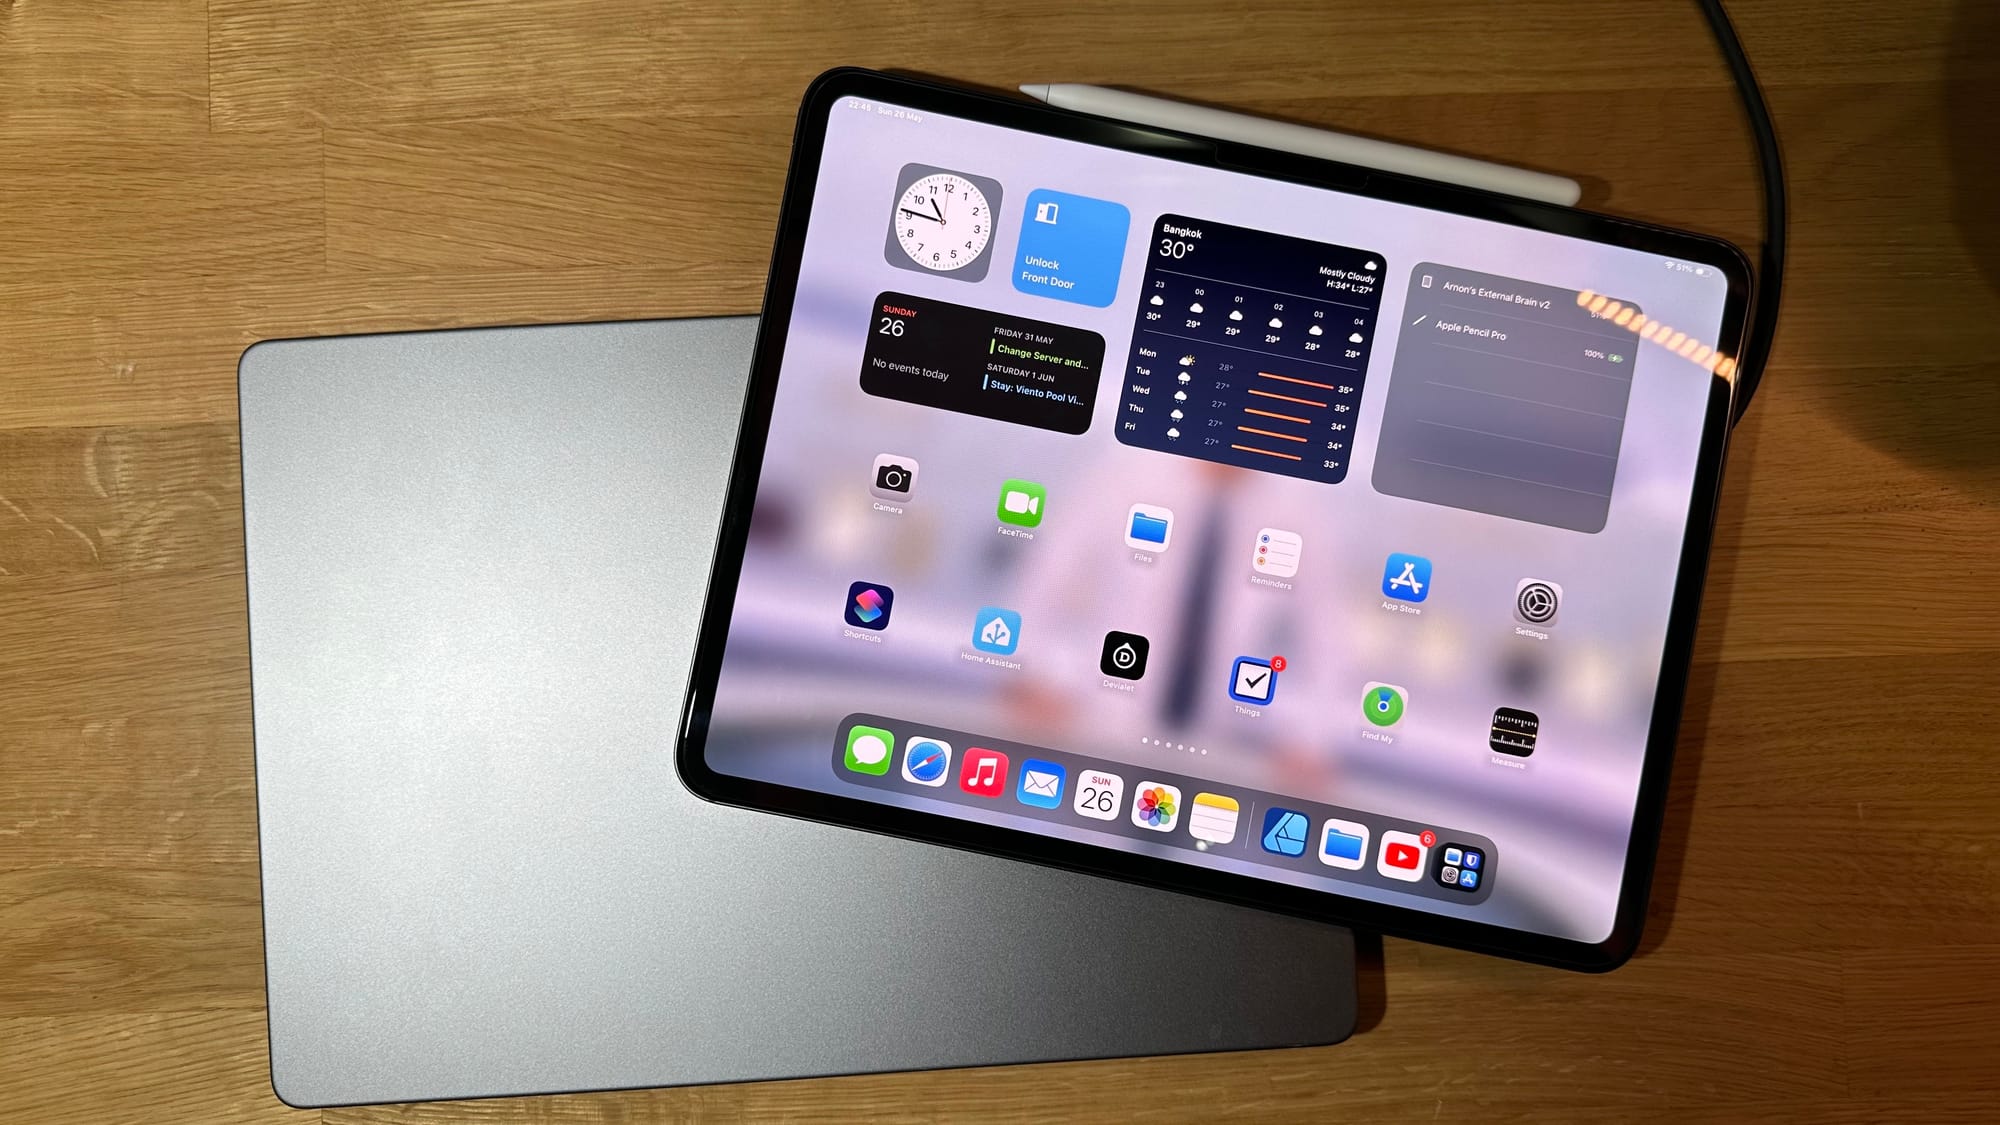 ทำไม iPad ยังเป็น iPad ไม่เป็น Mac